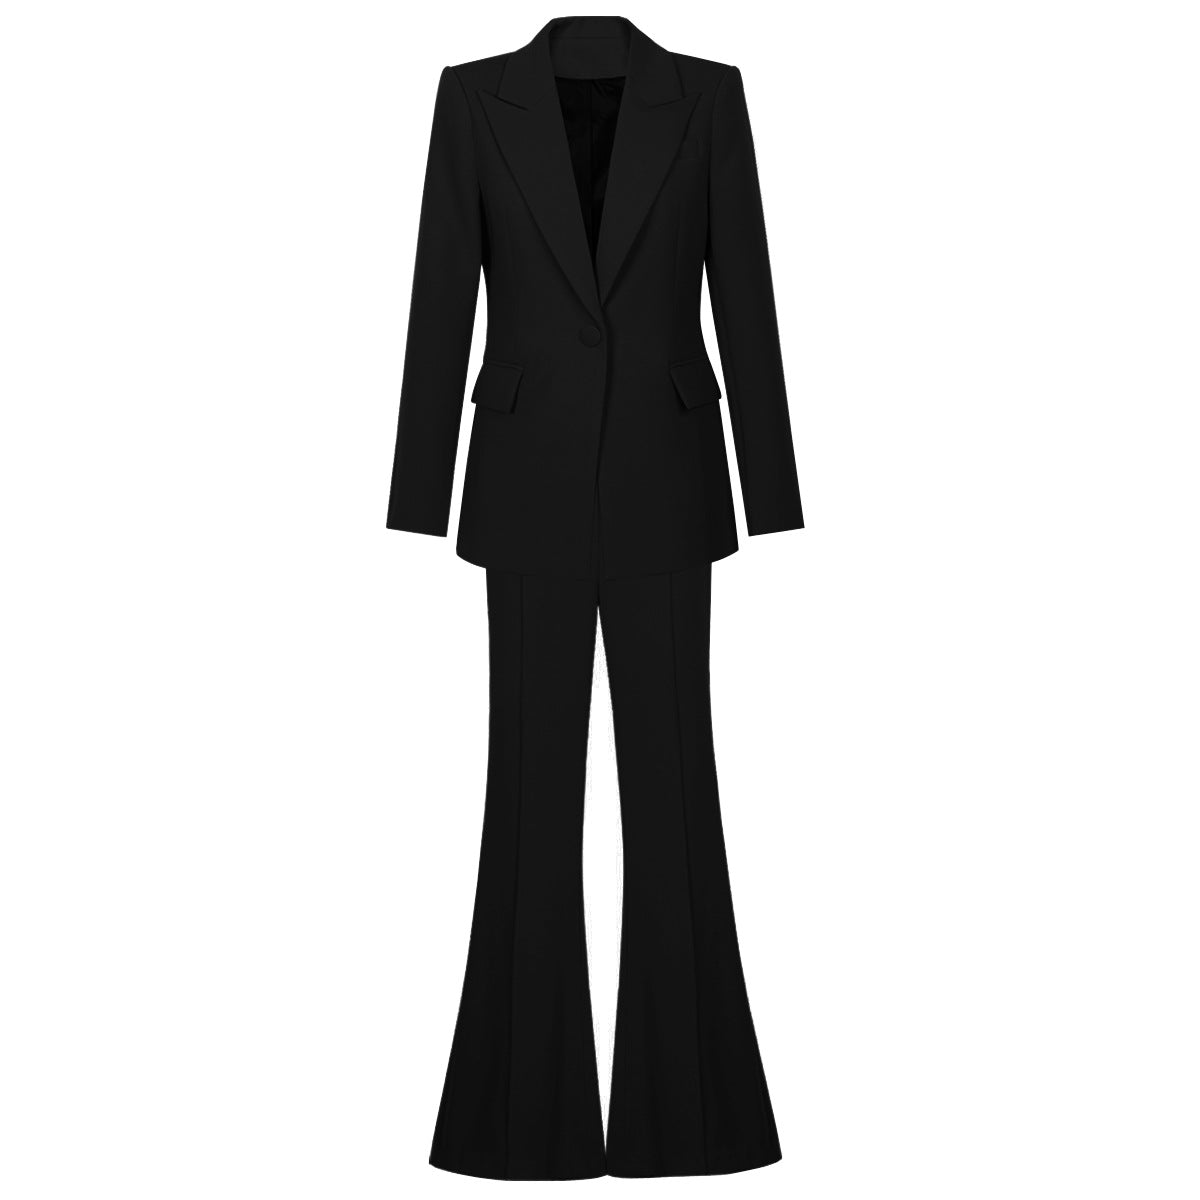 Fashionable High Rise Business Suit 2-Piece Set